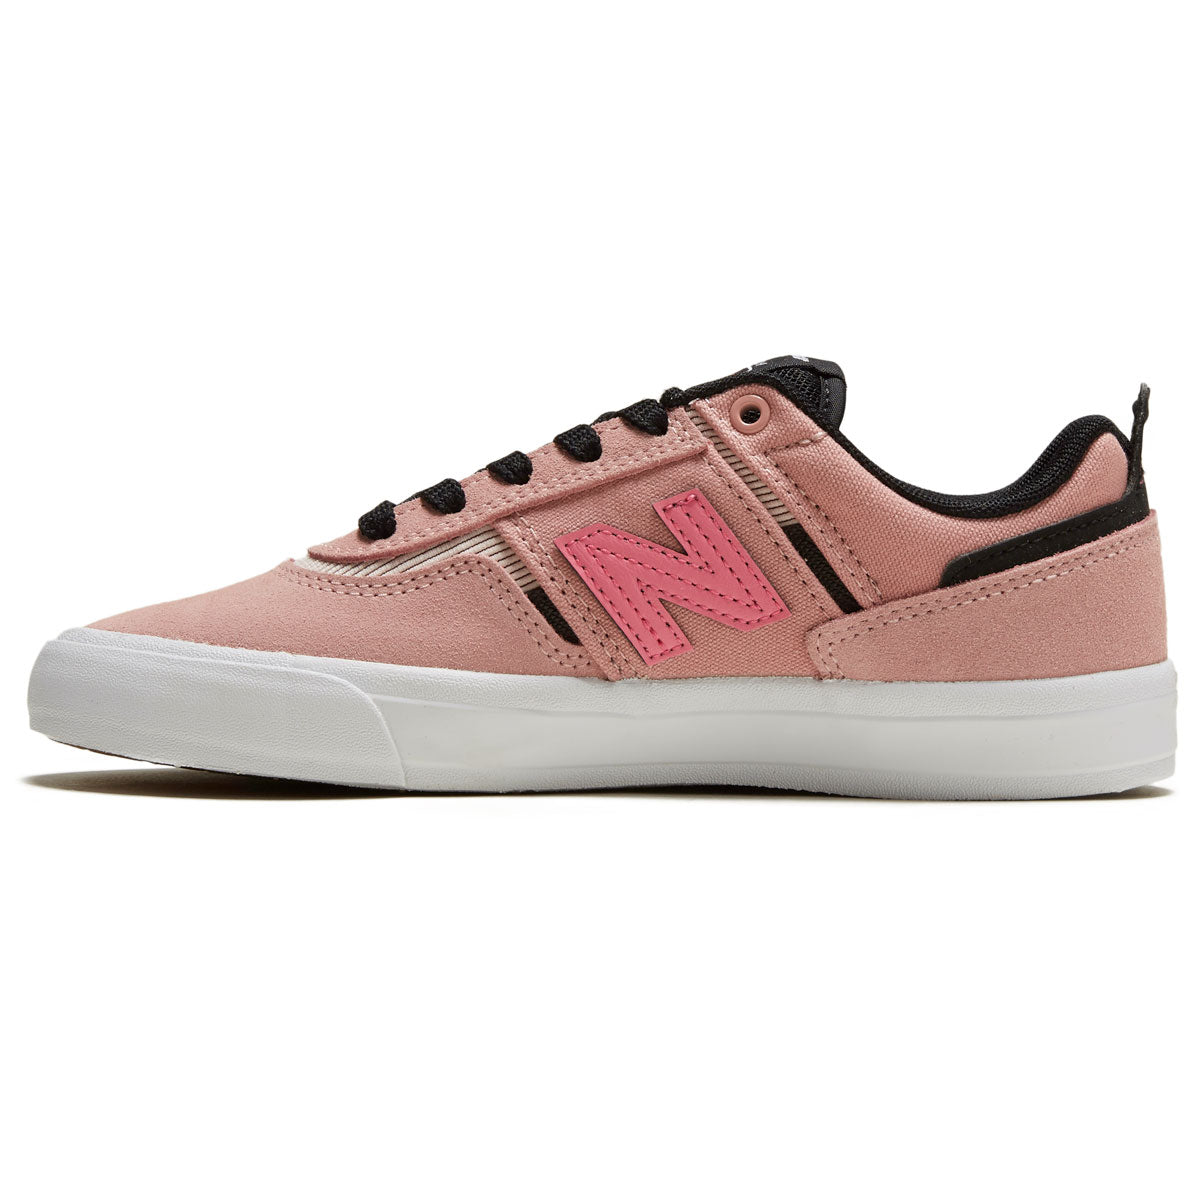 New Balance 306 Foy Shoes - Pink/Black image 2